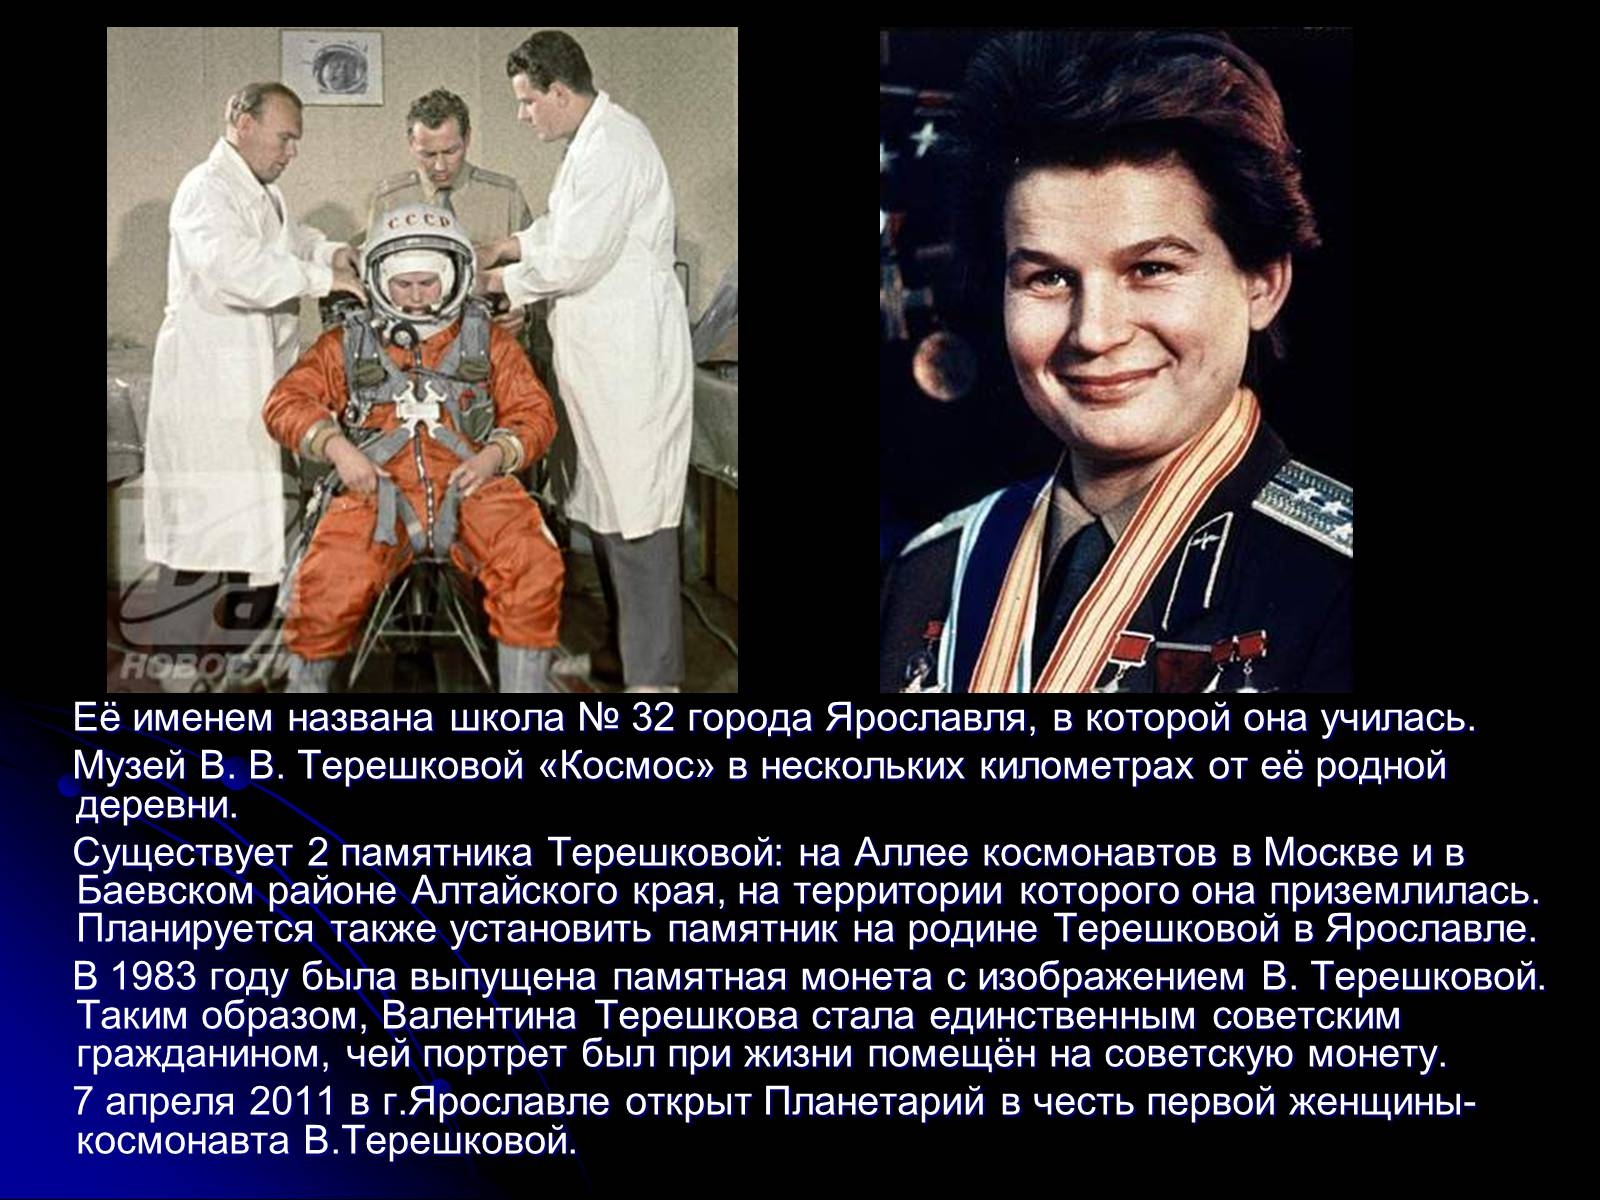 Имя первой полетевшей в космос. Герои космоса Терешкова.